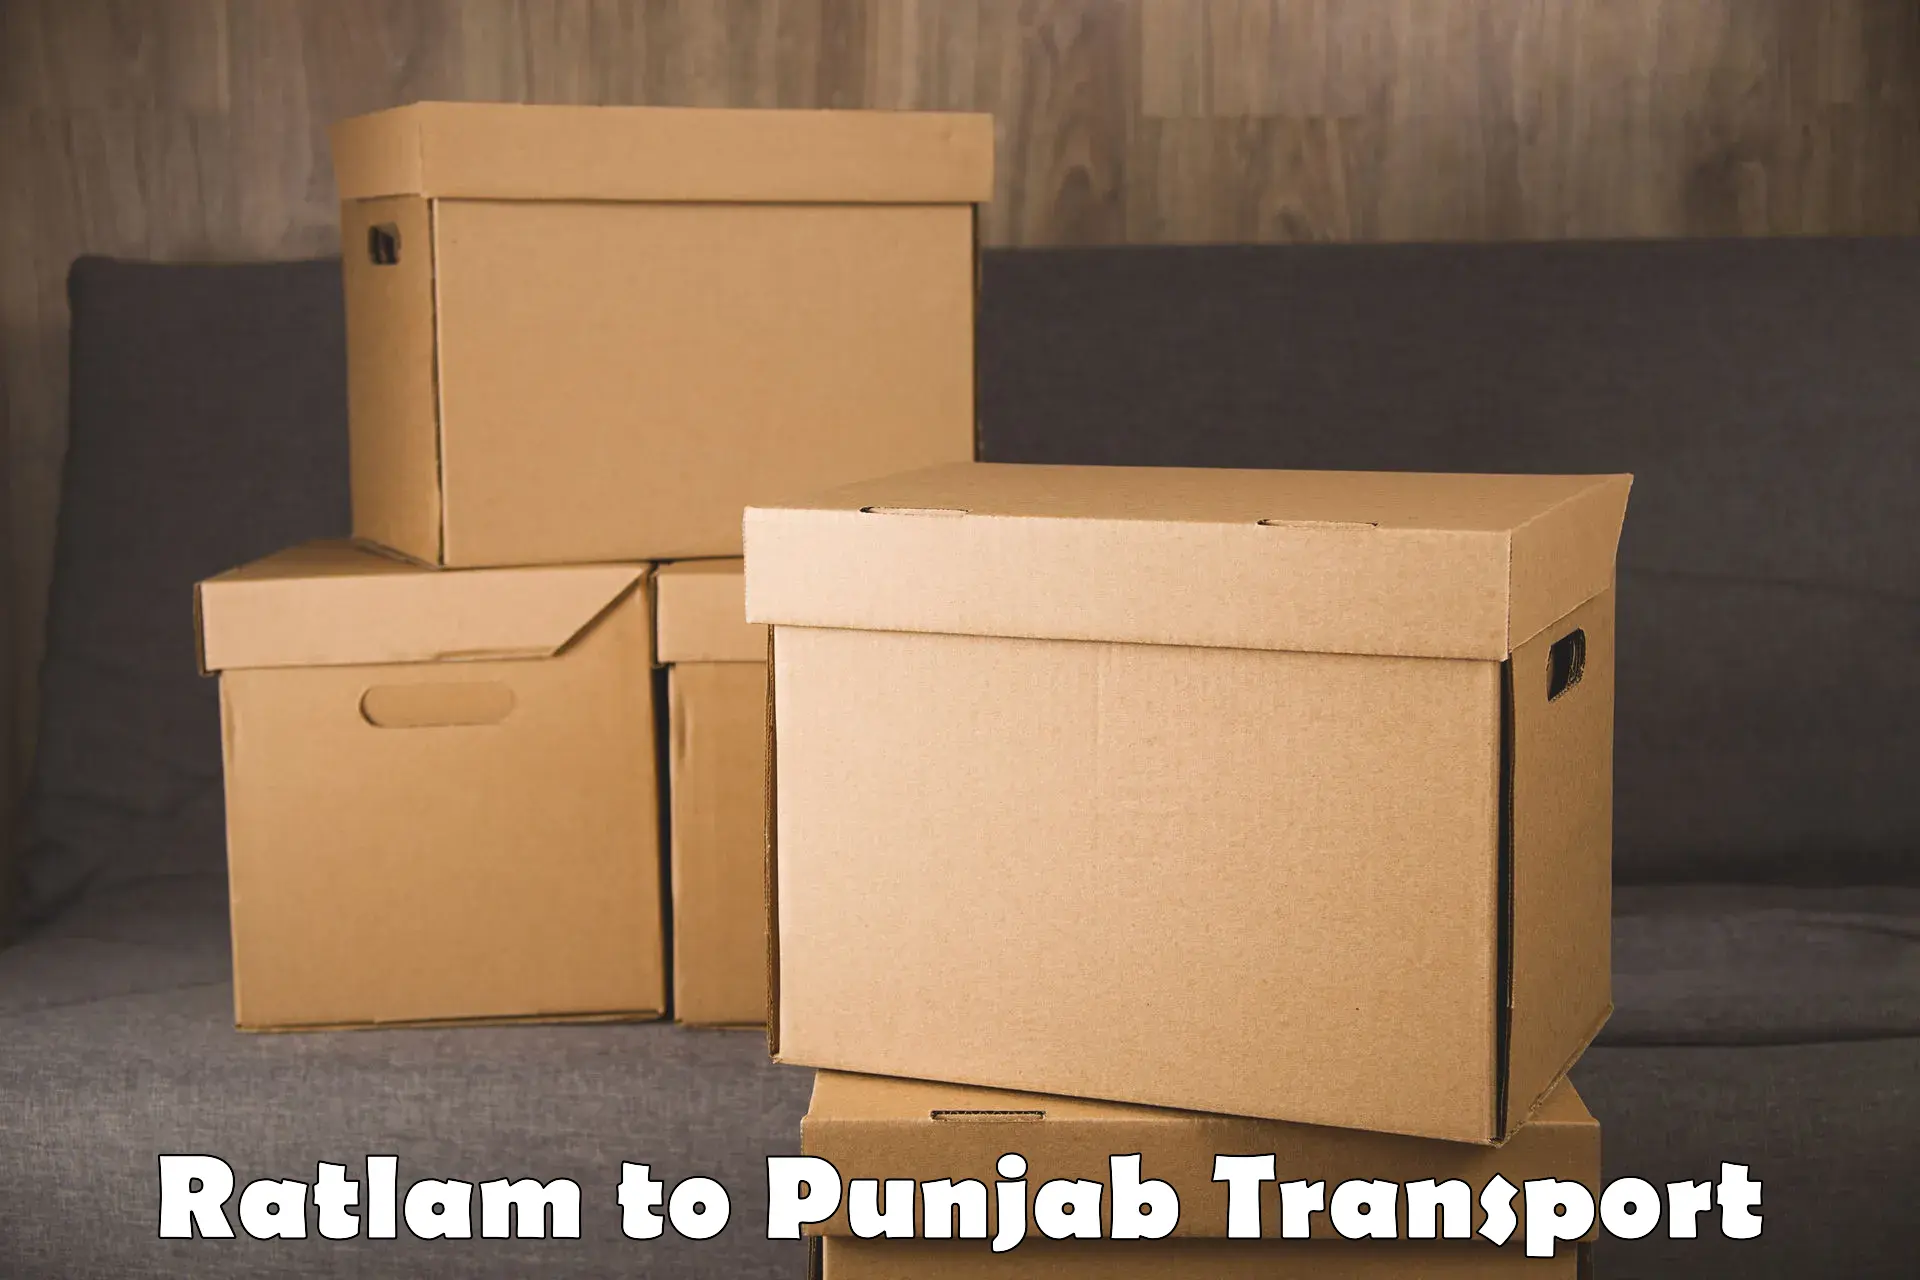 Furniture transport service Ratlam to Mohali